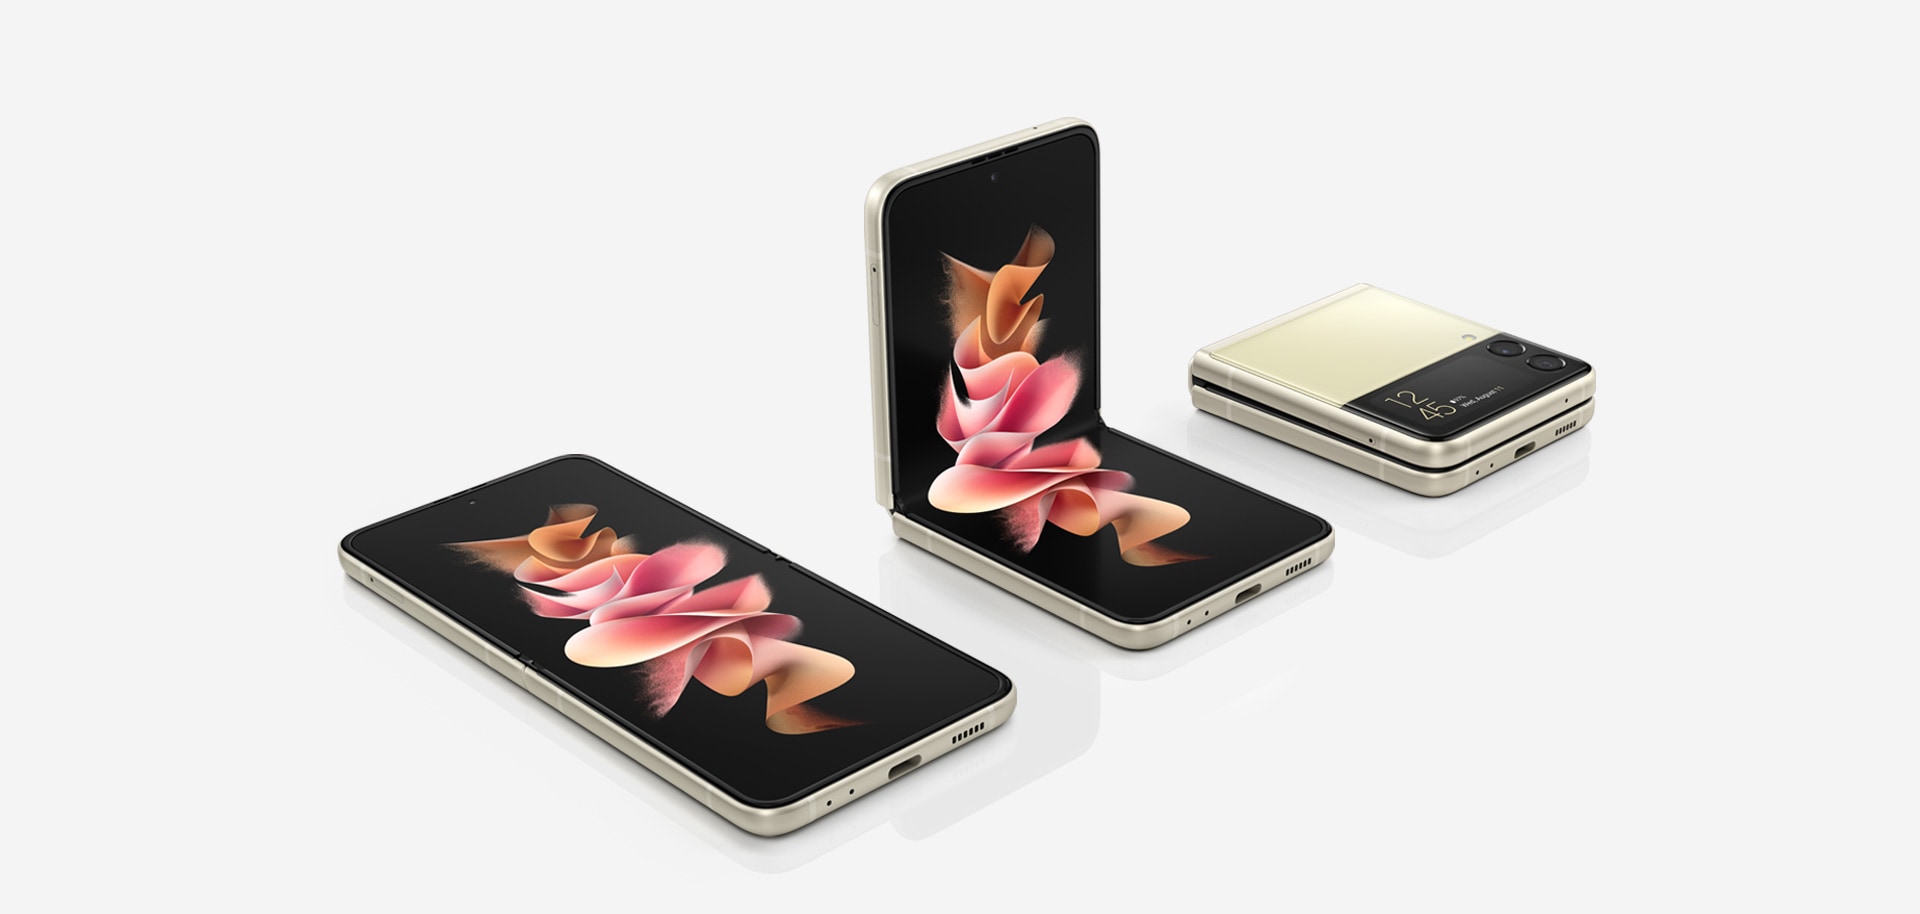 ثلاثة هواتف Galaxy Z Flip3 5G. هاتف مفتوح ويظهر على الشاشة الرئيسية خلفية ملونة. وهاتف في الوضع Flex (المرن) مع خلفية ملونة على الشاشة الرئيسية. وهاتف مطوي مع ظهور الوقت على شاشة الغطاء Cover Screen.